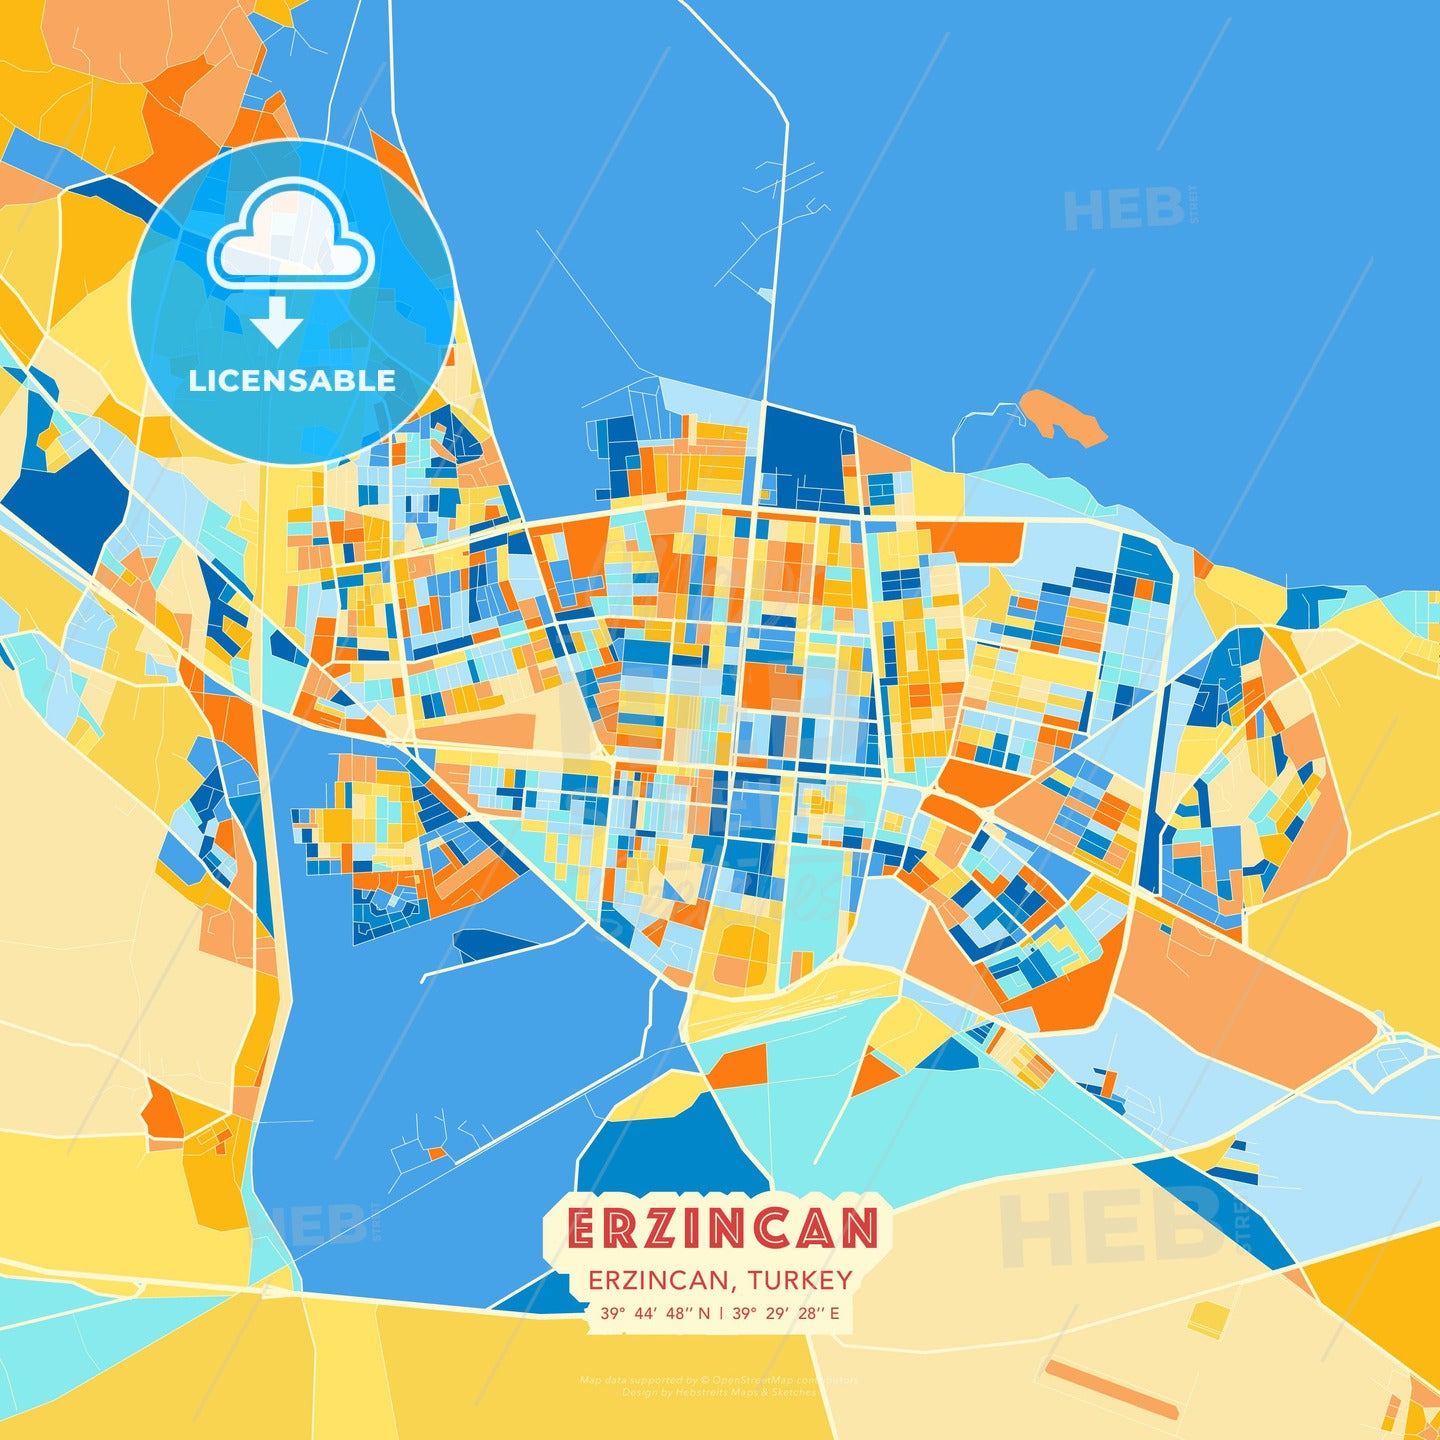 Erzincan, Erzincan, Turkey, map - HEBSTREITS Sketches